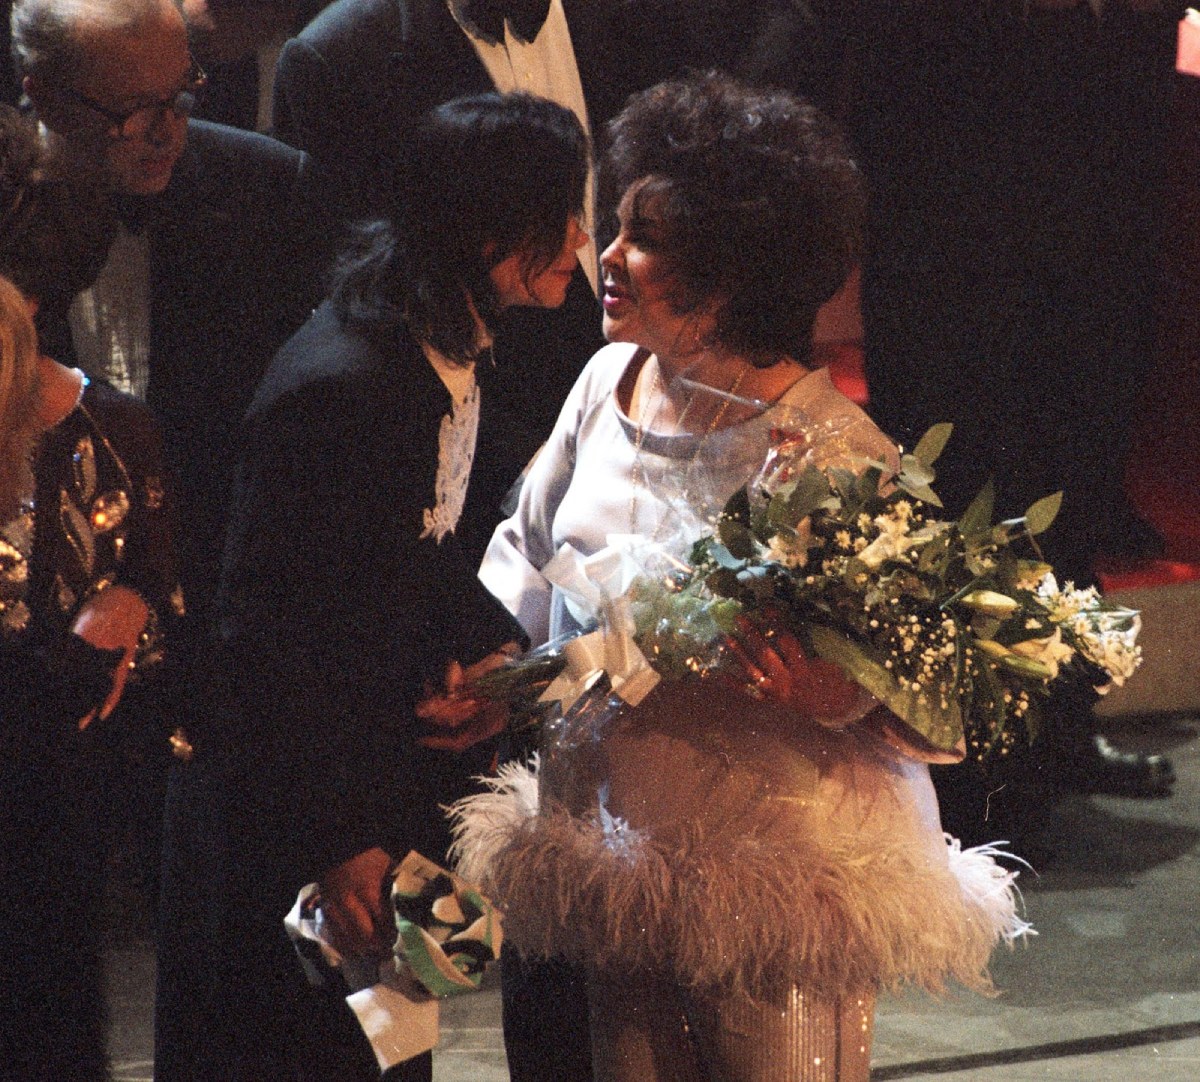 Michael Jackson y Elizabeth Taylor